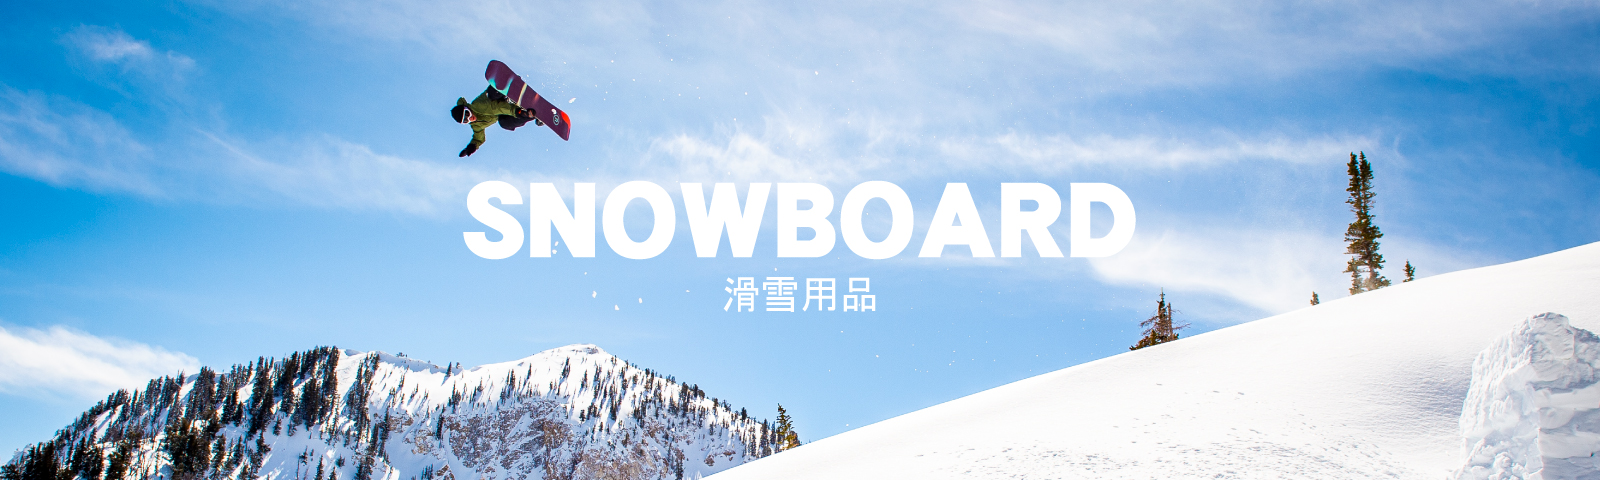 ◤ 滑雪用品 / Snow